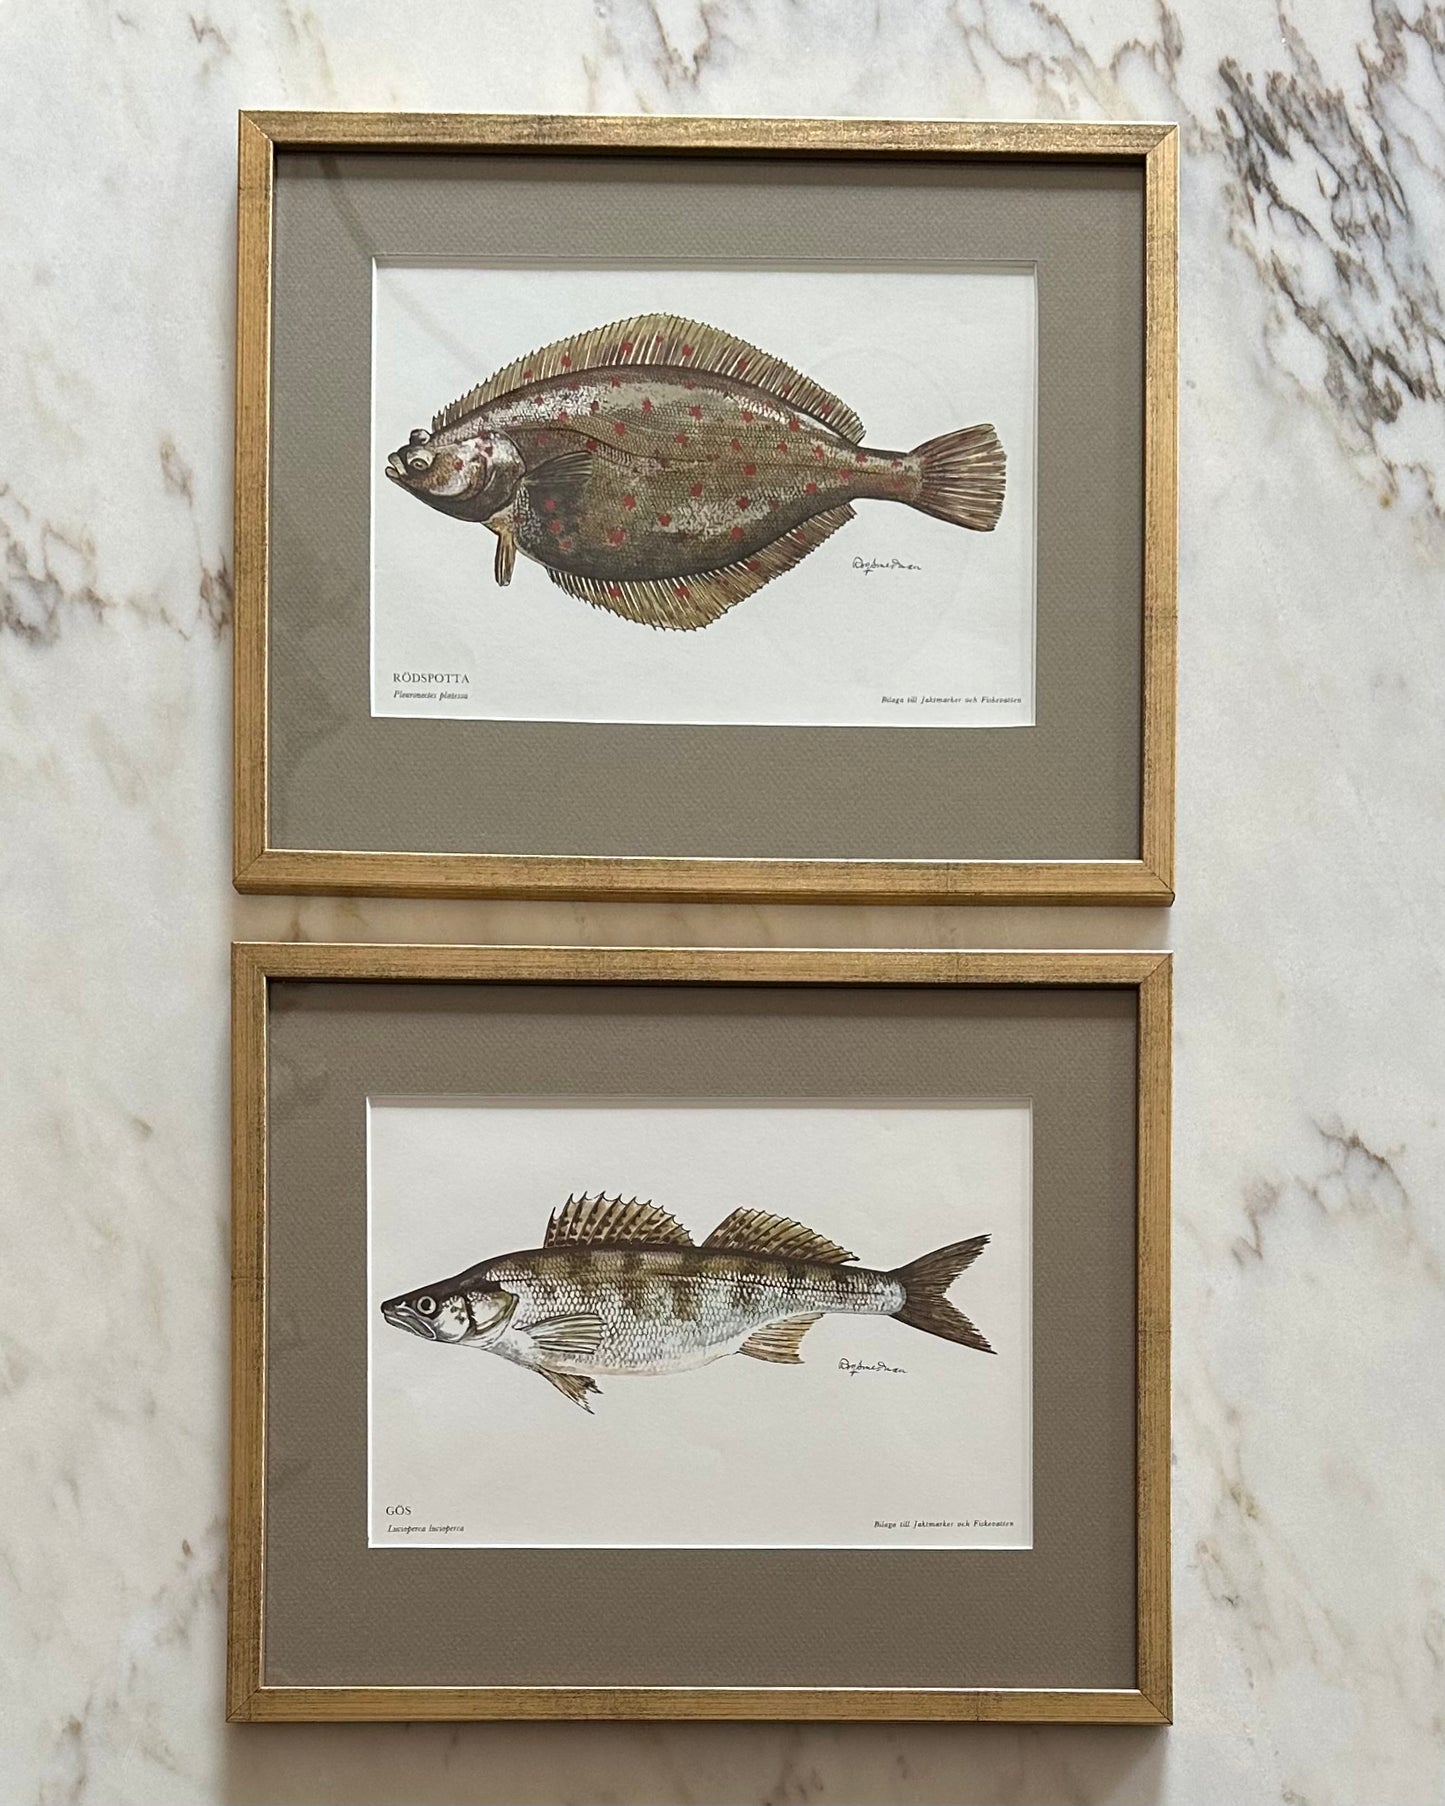 Framed Vintage Fish Print - "Rödspotta"